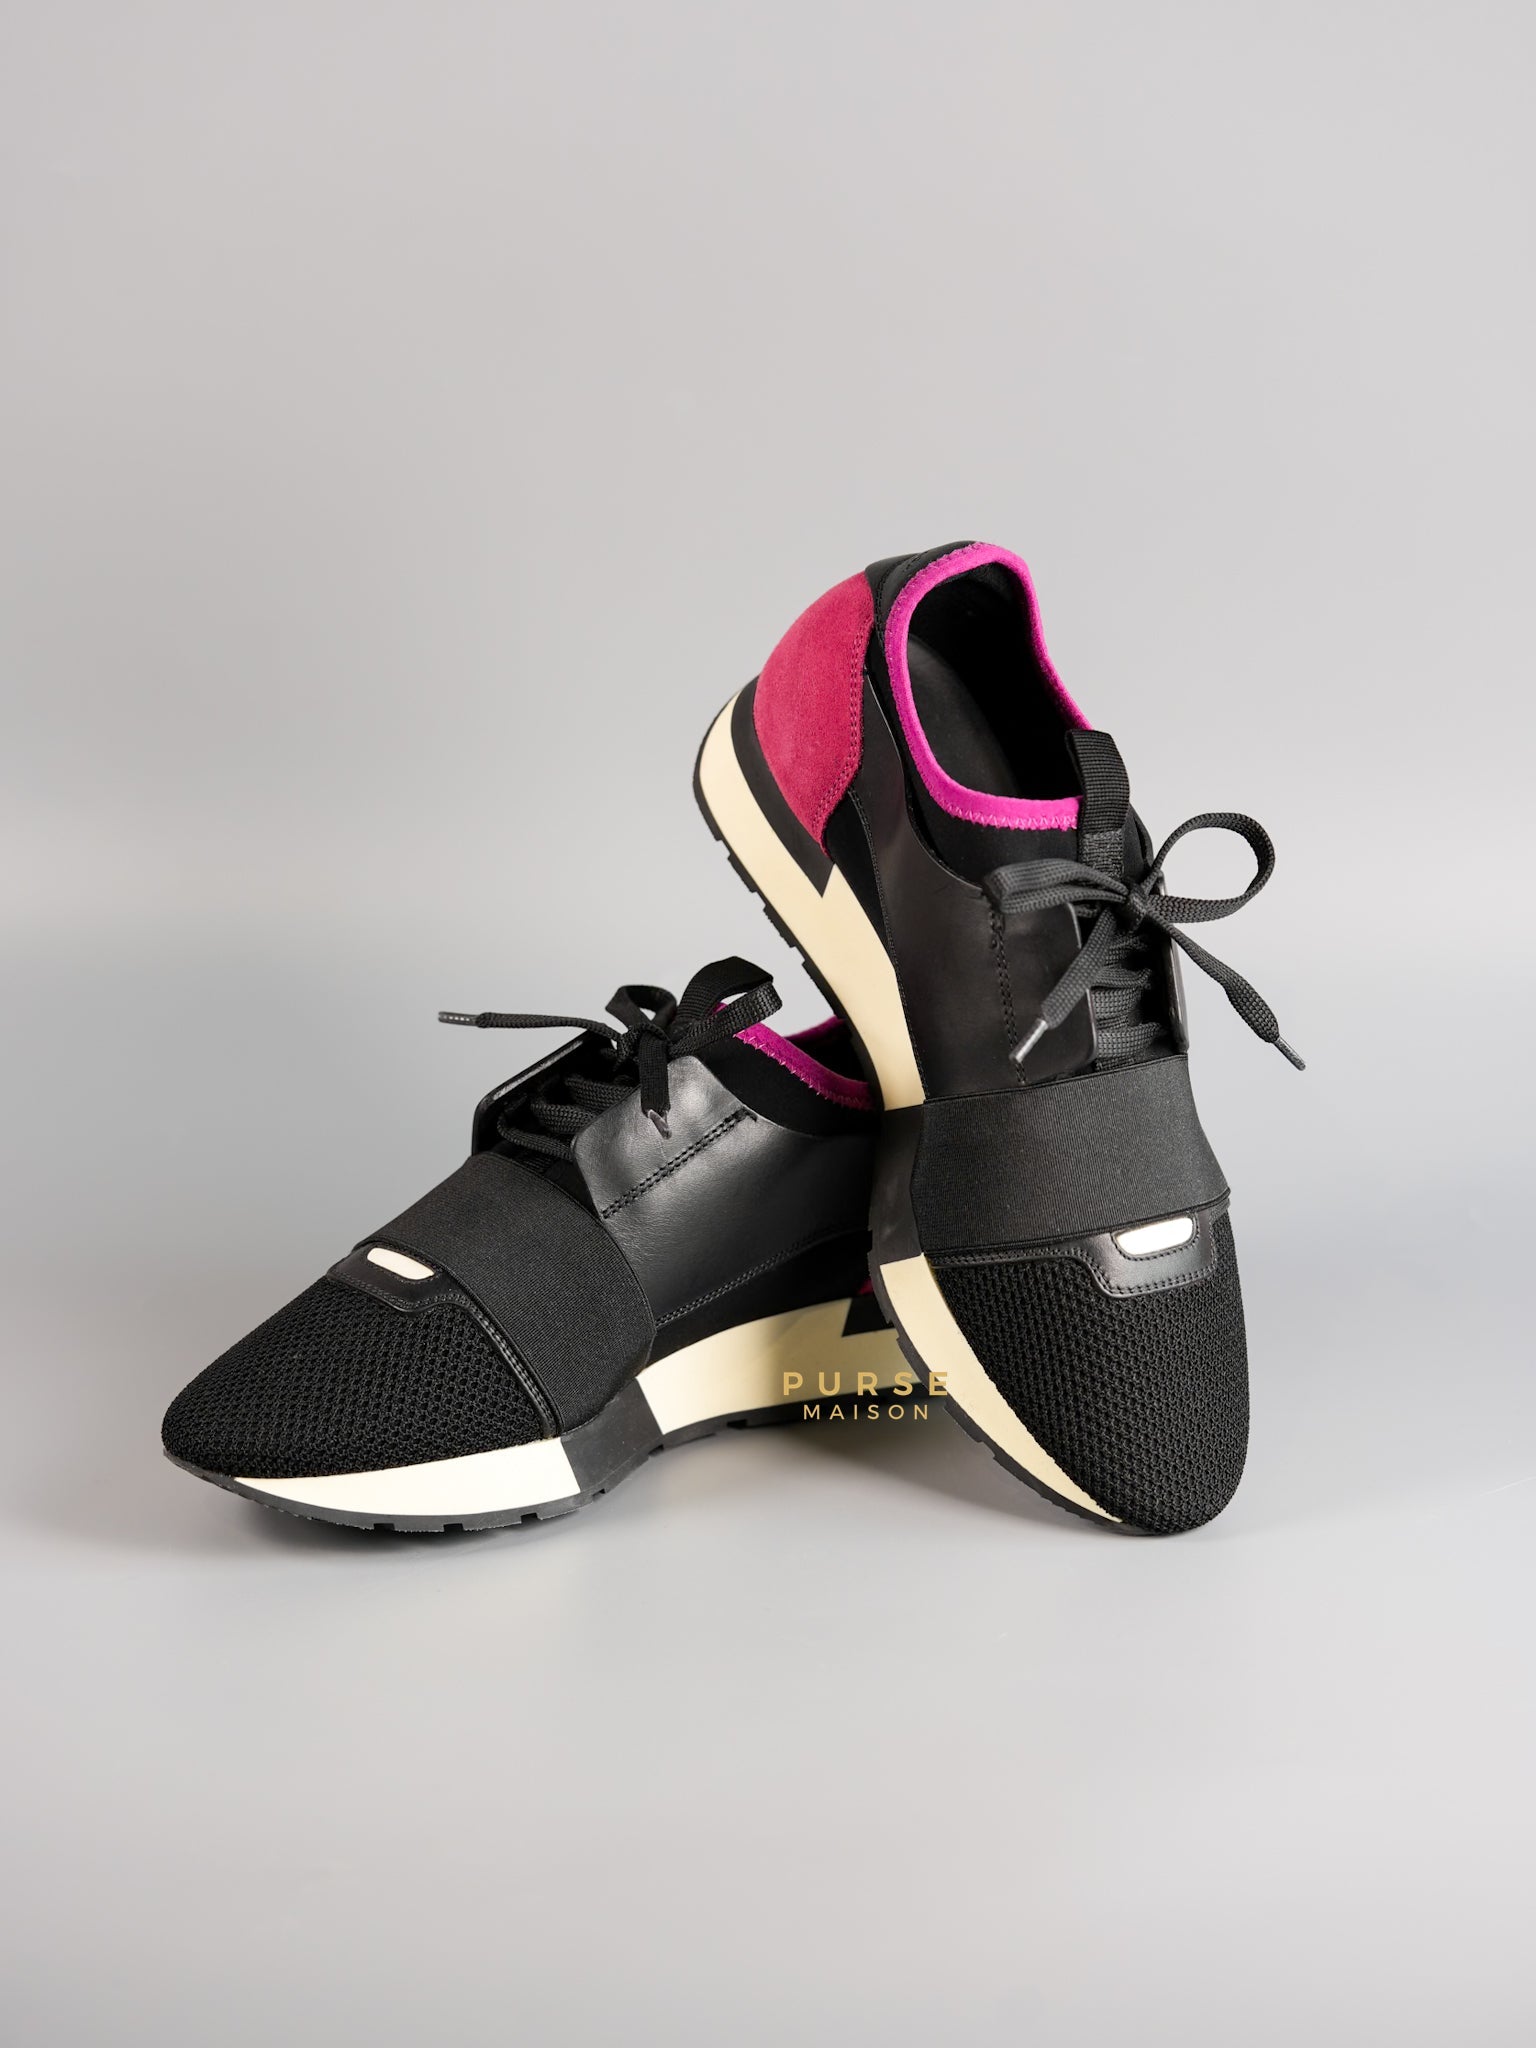 Race Runners Sneakers in Black & Fuschia Size 39 (26cm) | Purse Maison Luxury Bags Shop